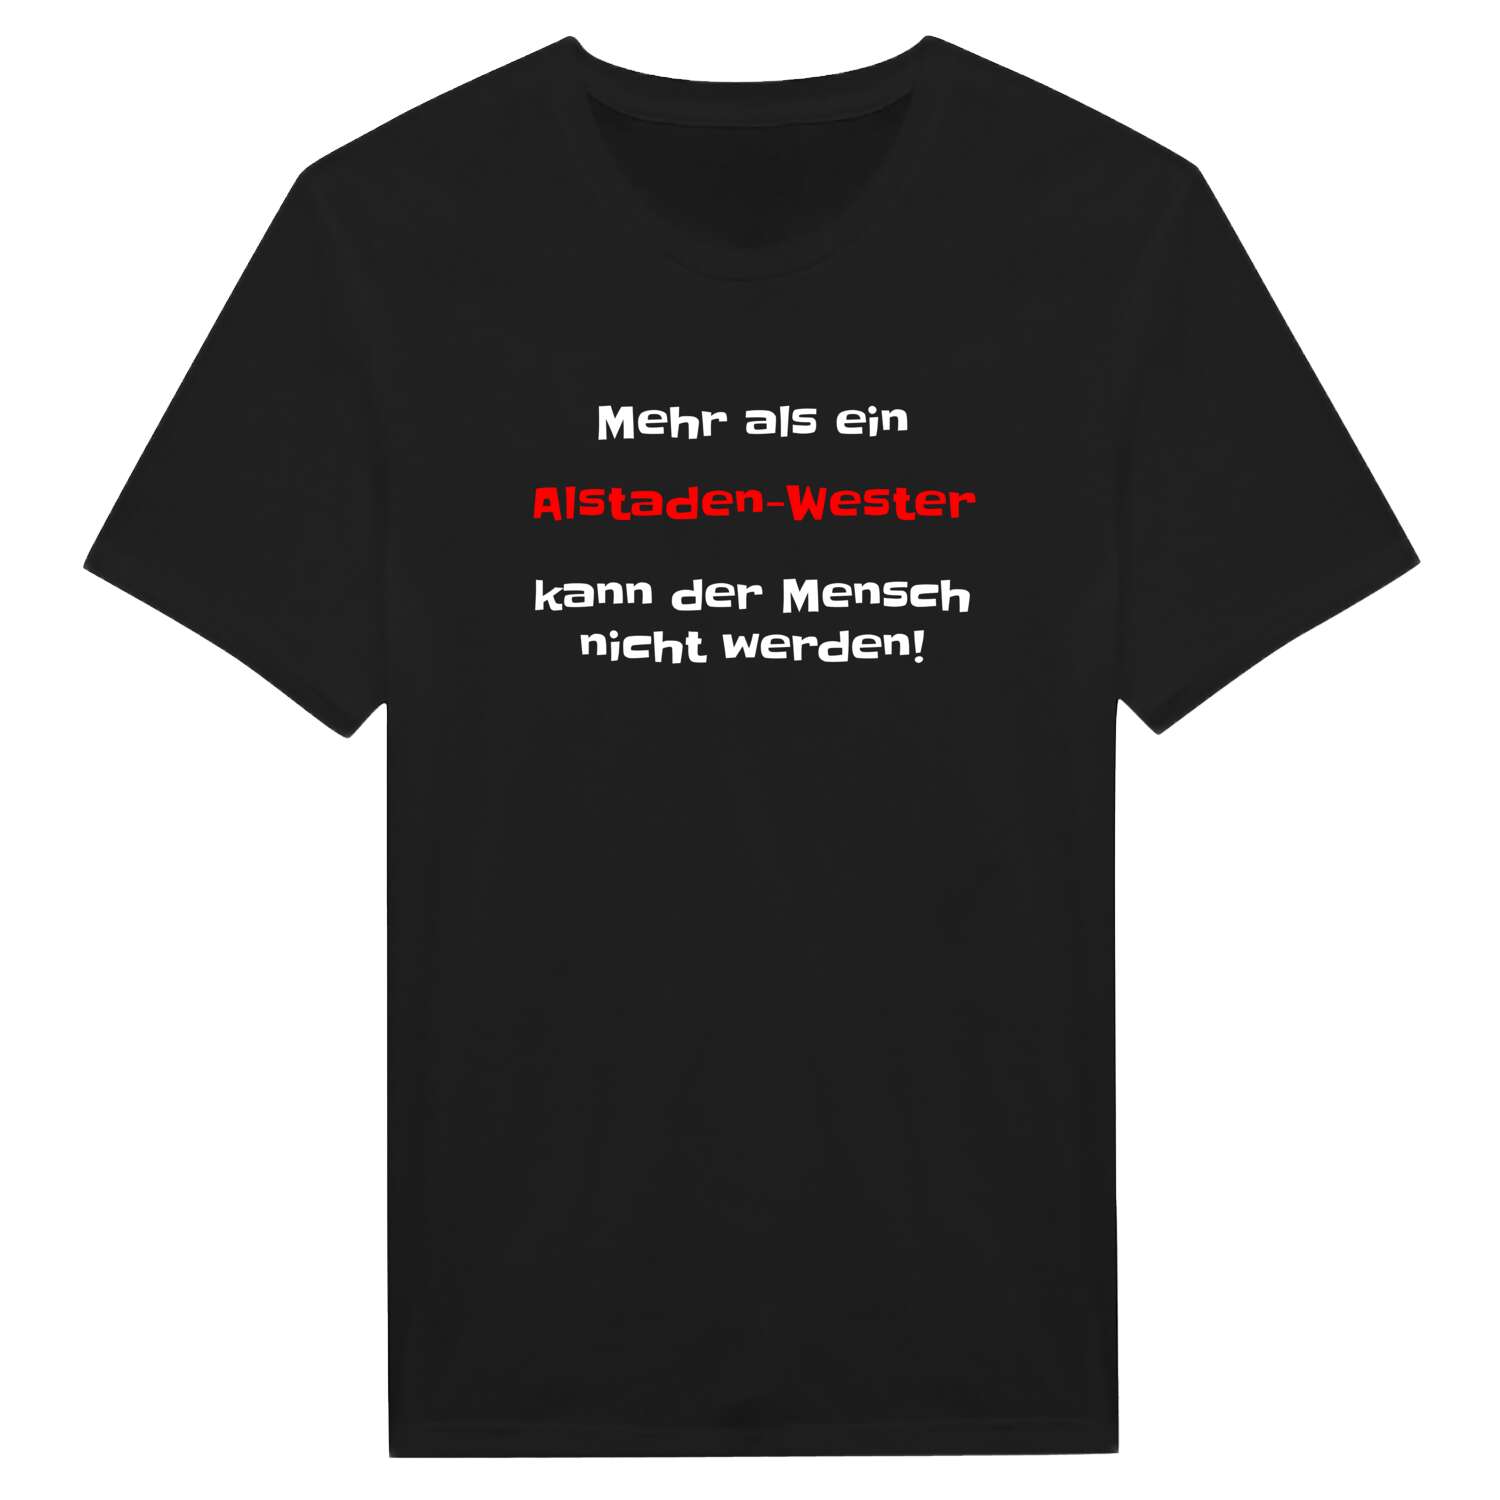 Alstaden-West T-Shirt »Mehr als ein«